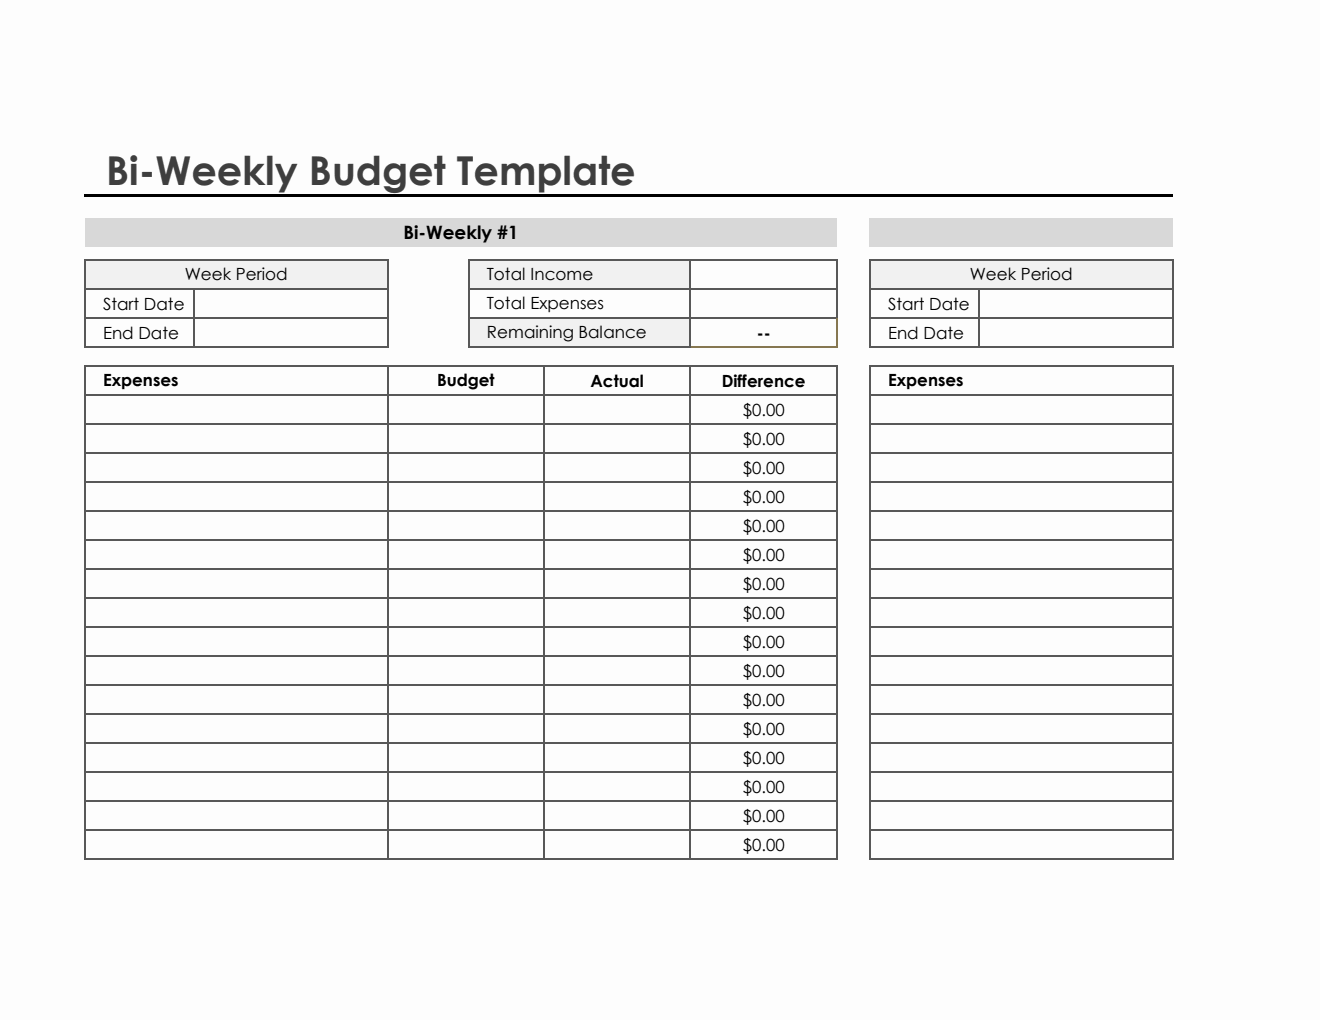 Biweekly Budget Template in Excel (Simple)